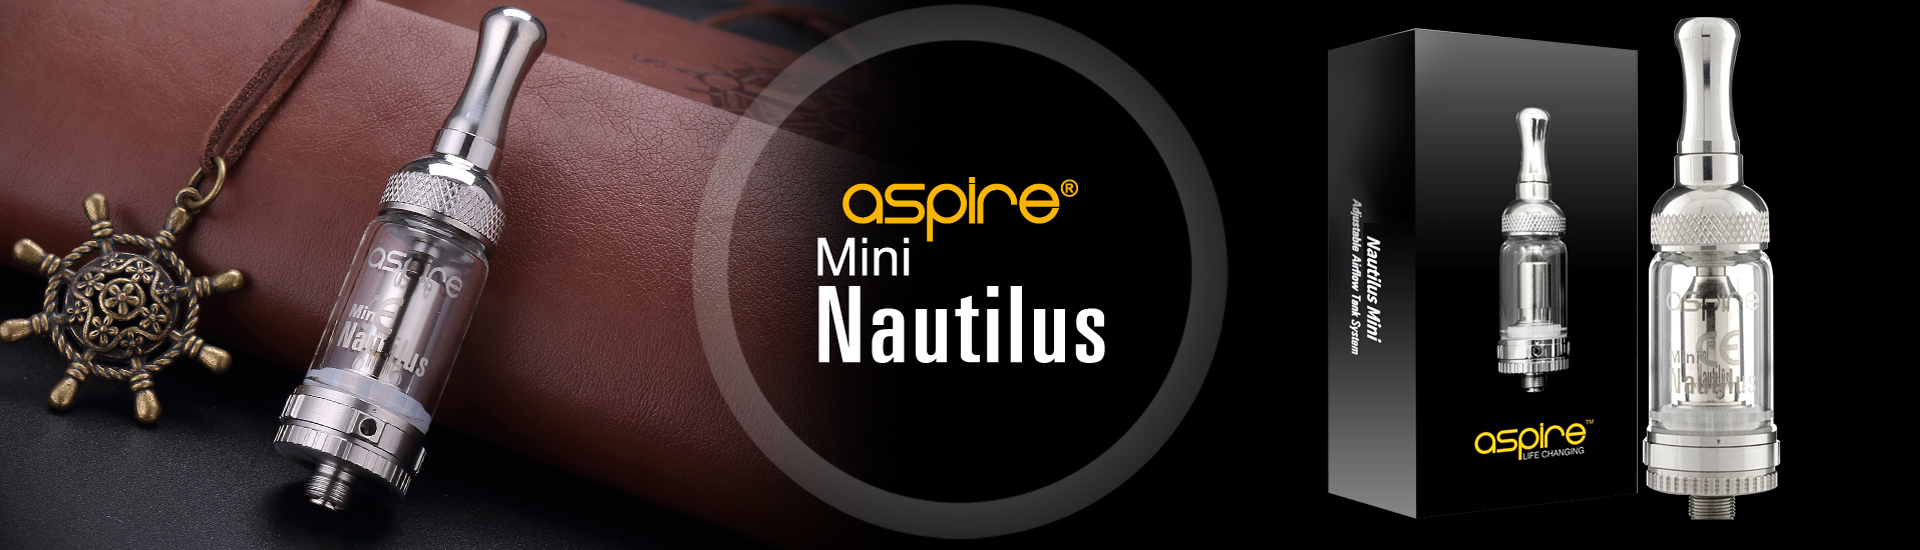 clearomiseur mini nautilus aspire - ciklopvertou.fr cigarette électronique 44